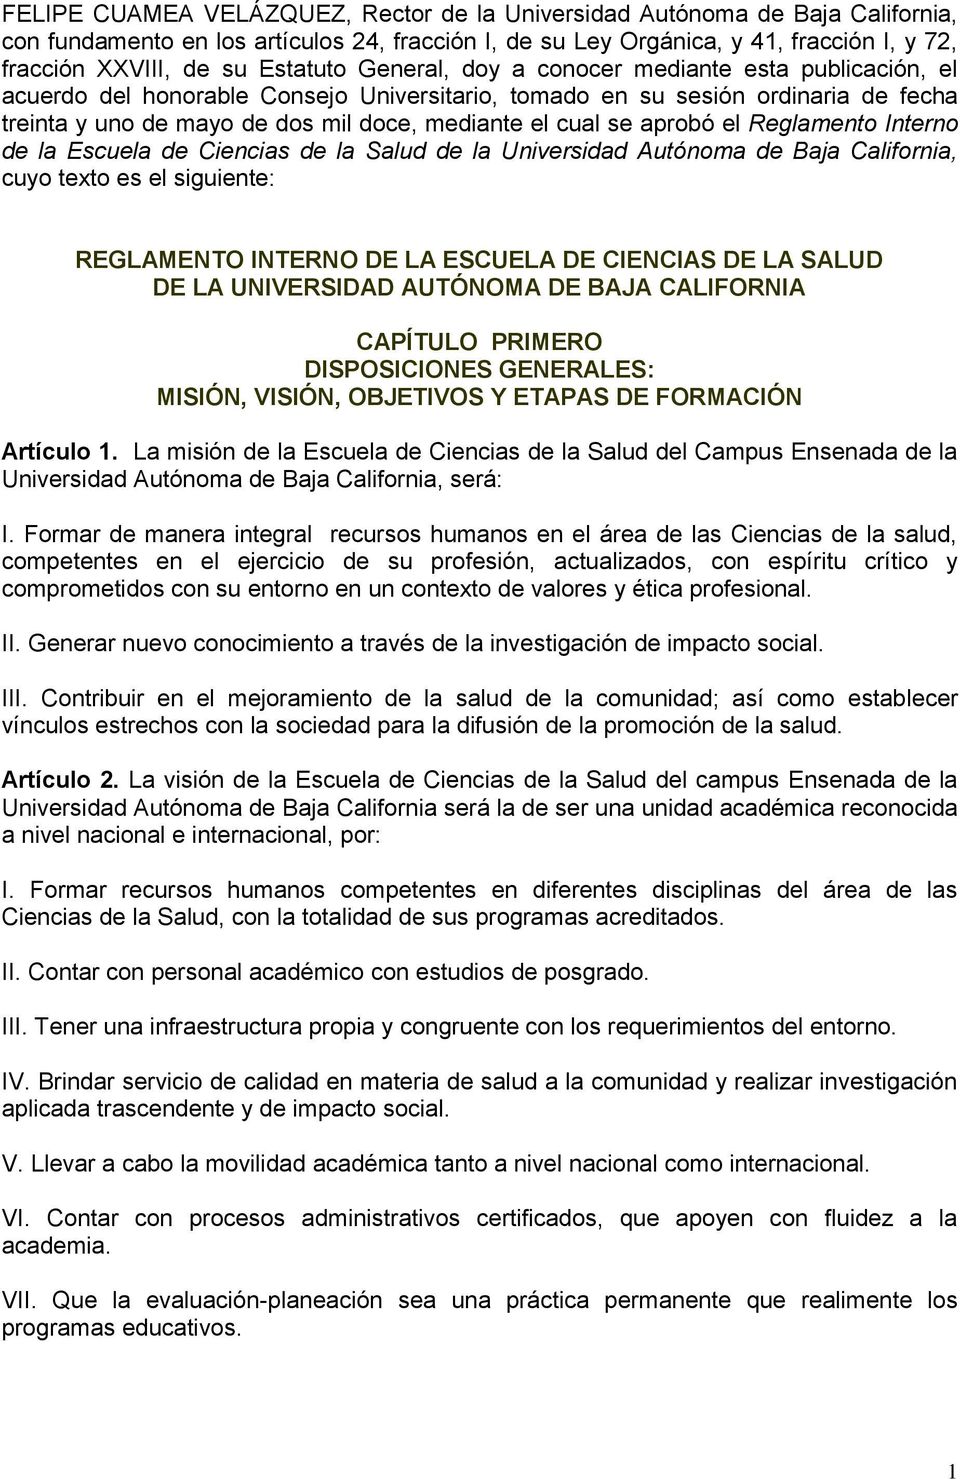 cual se aprobó el Reglamento Interno de la Escuela de Ciencias de la Salud de la Universidad Autónoma de Baja California, cuyo texto es el siguiente: REGLAMENTO INTERNO DE LA ESCUELA DE CIENCIAS DE